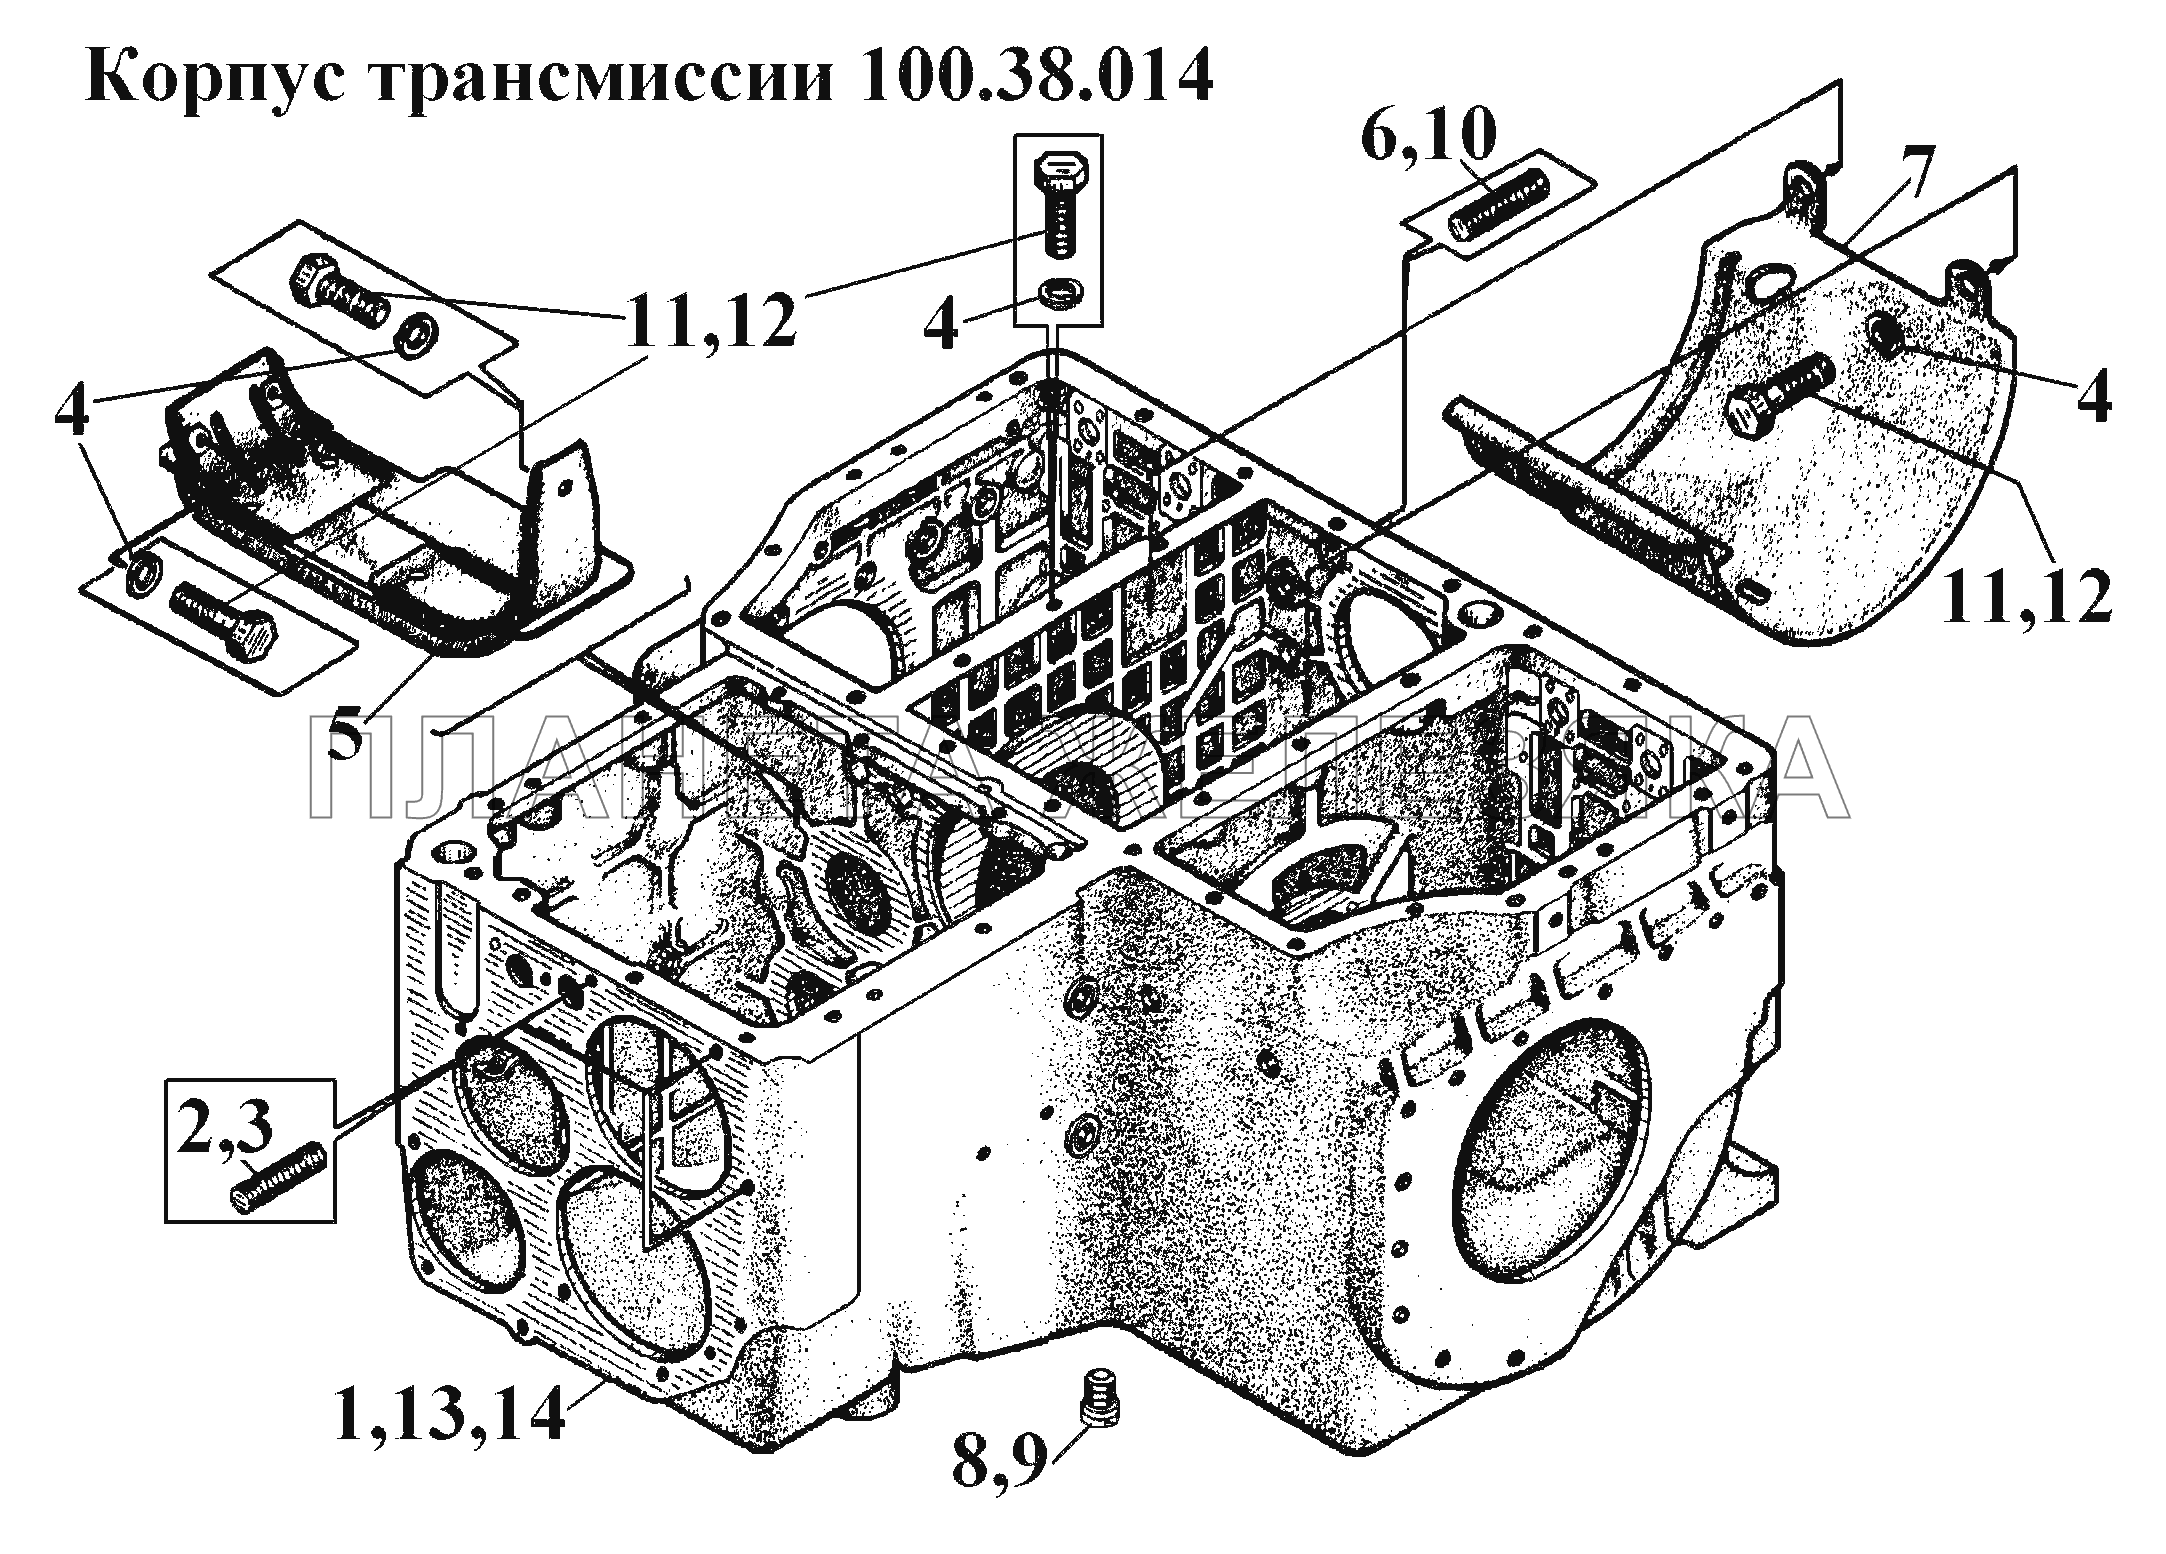 Корпус трансмиссии 100.38.014 ВТ-100Д